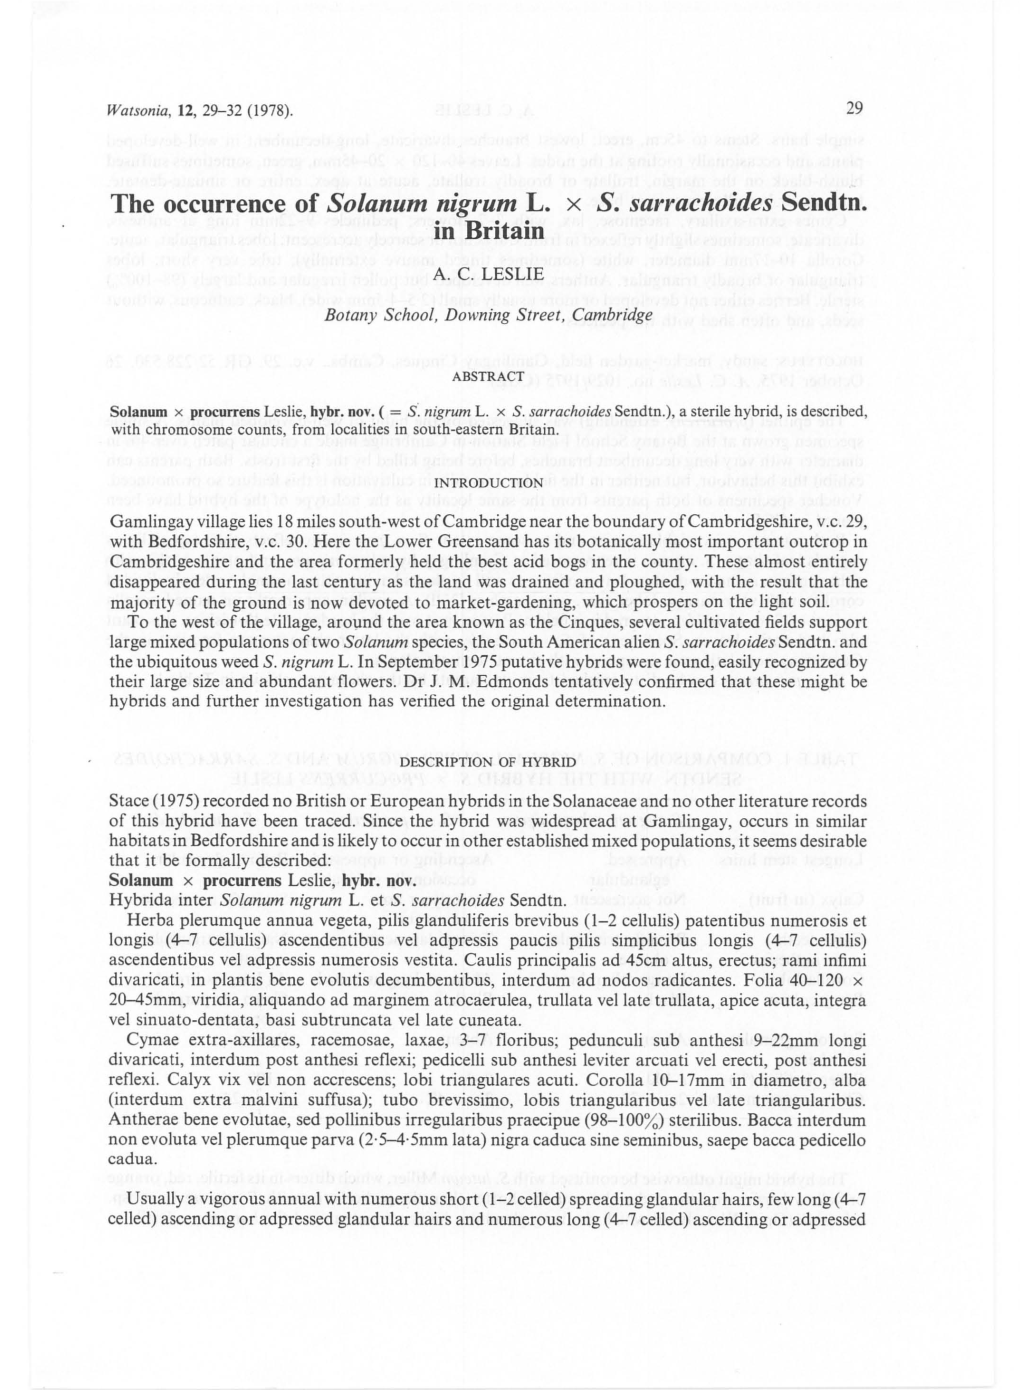 The Occurrence of Solanum Nigrum L. X S. Sarrachoides Sendtn. in Britain